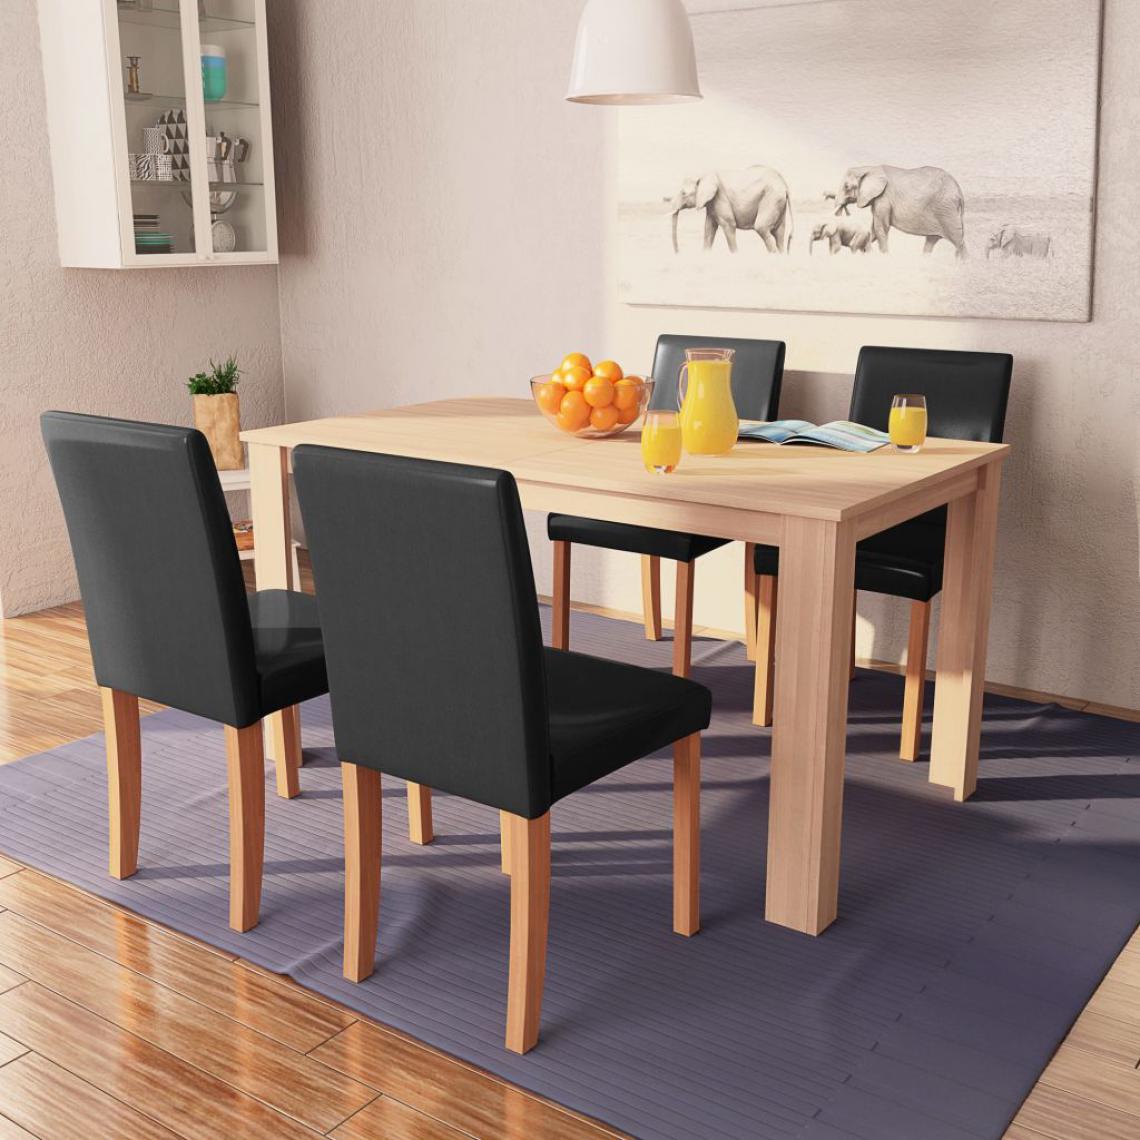 Chunhelife - Table et chaises 5 pcs Cuir synthétique Chêne Noir - Tables à manger